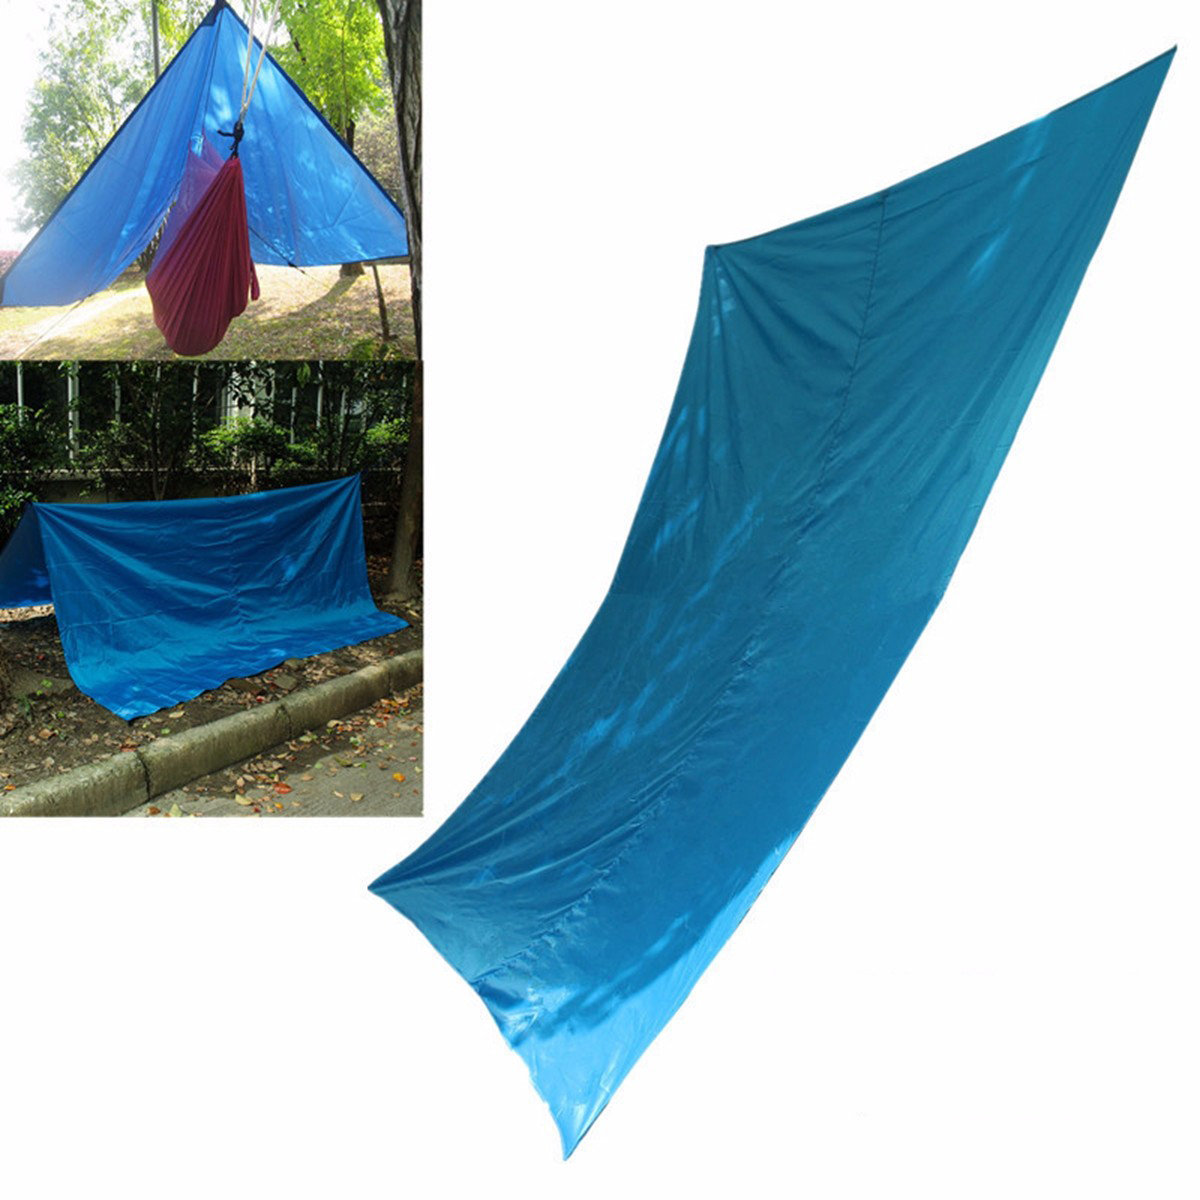 Outdoor-Hängematte Havelock mit Sonnenschutz- und Sonnenschutz-Zelt von 300x300 cm für Reisen, Camping und Wandern.